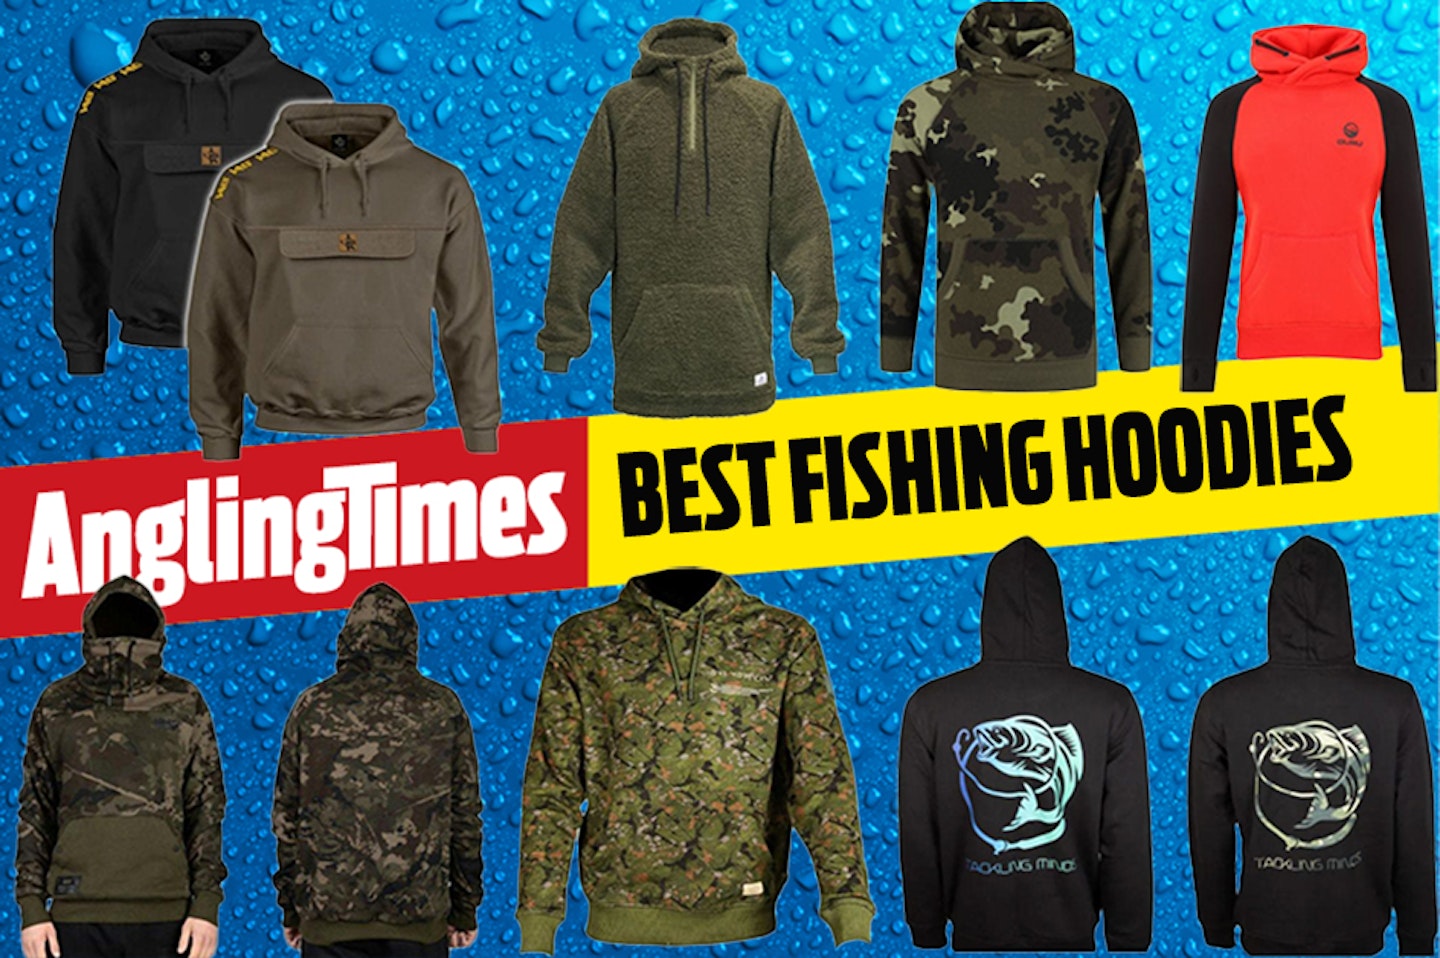 The best fishing hoodies